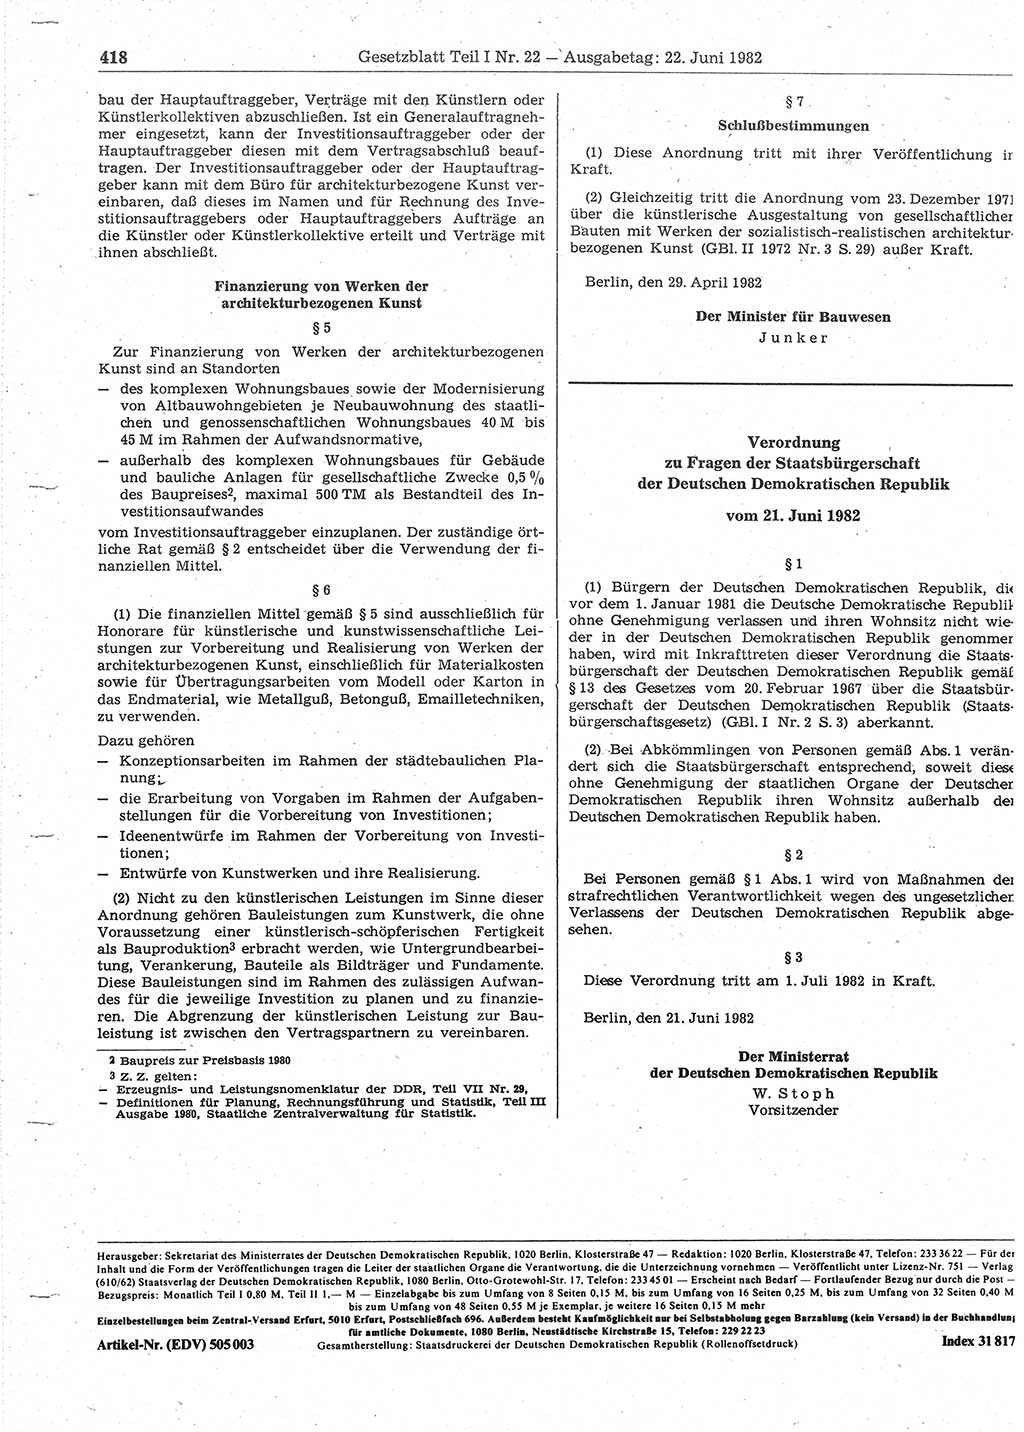 Gesetzblatt (GBl.) der Deutschen Demokratischen Republik (DDR) Teil Ⅰ 1982, Seite 418 (GBl. DDR Ⅰ 1982, S. 418)